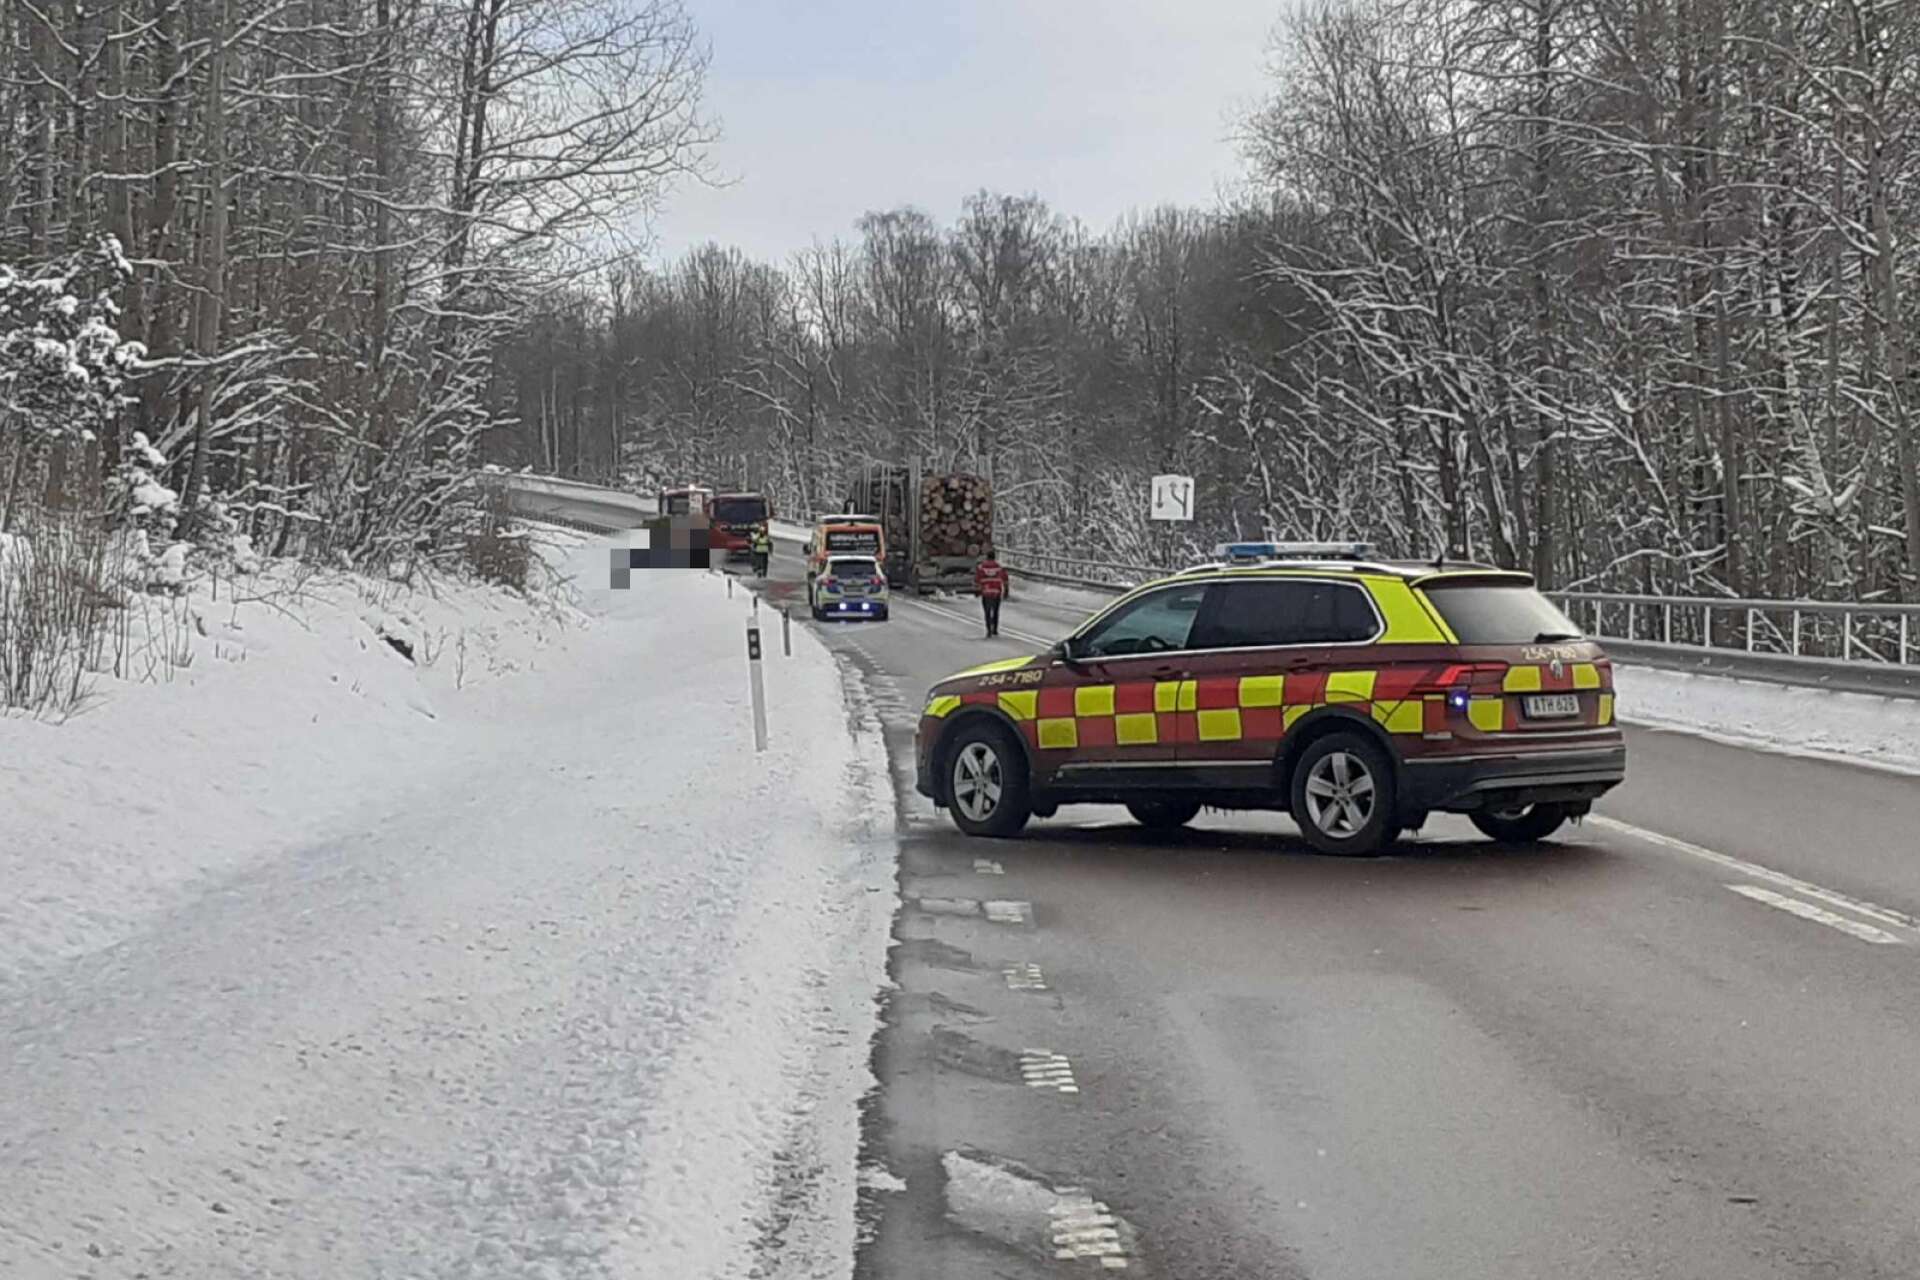 Det var i torsdags i förra veckan som en personbil kolliderade med en timmerbil på väg 164 i Edsleskog utanför Åmål.